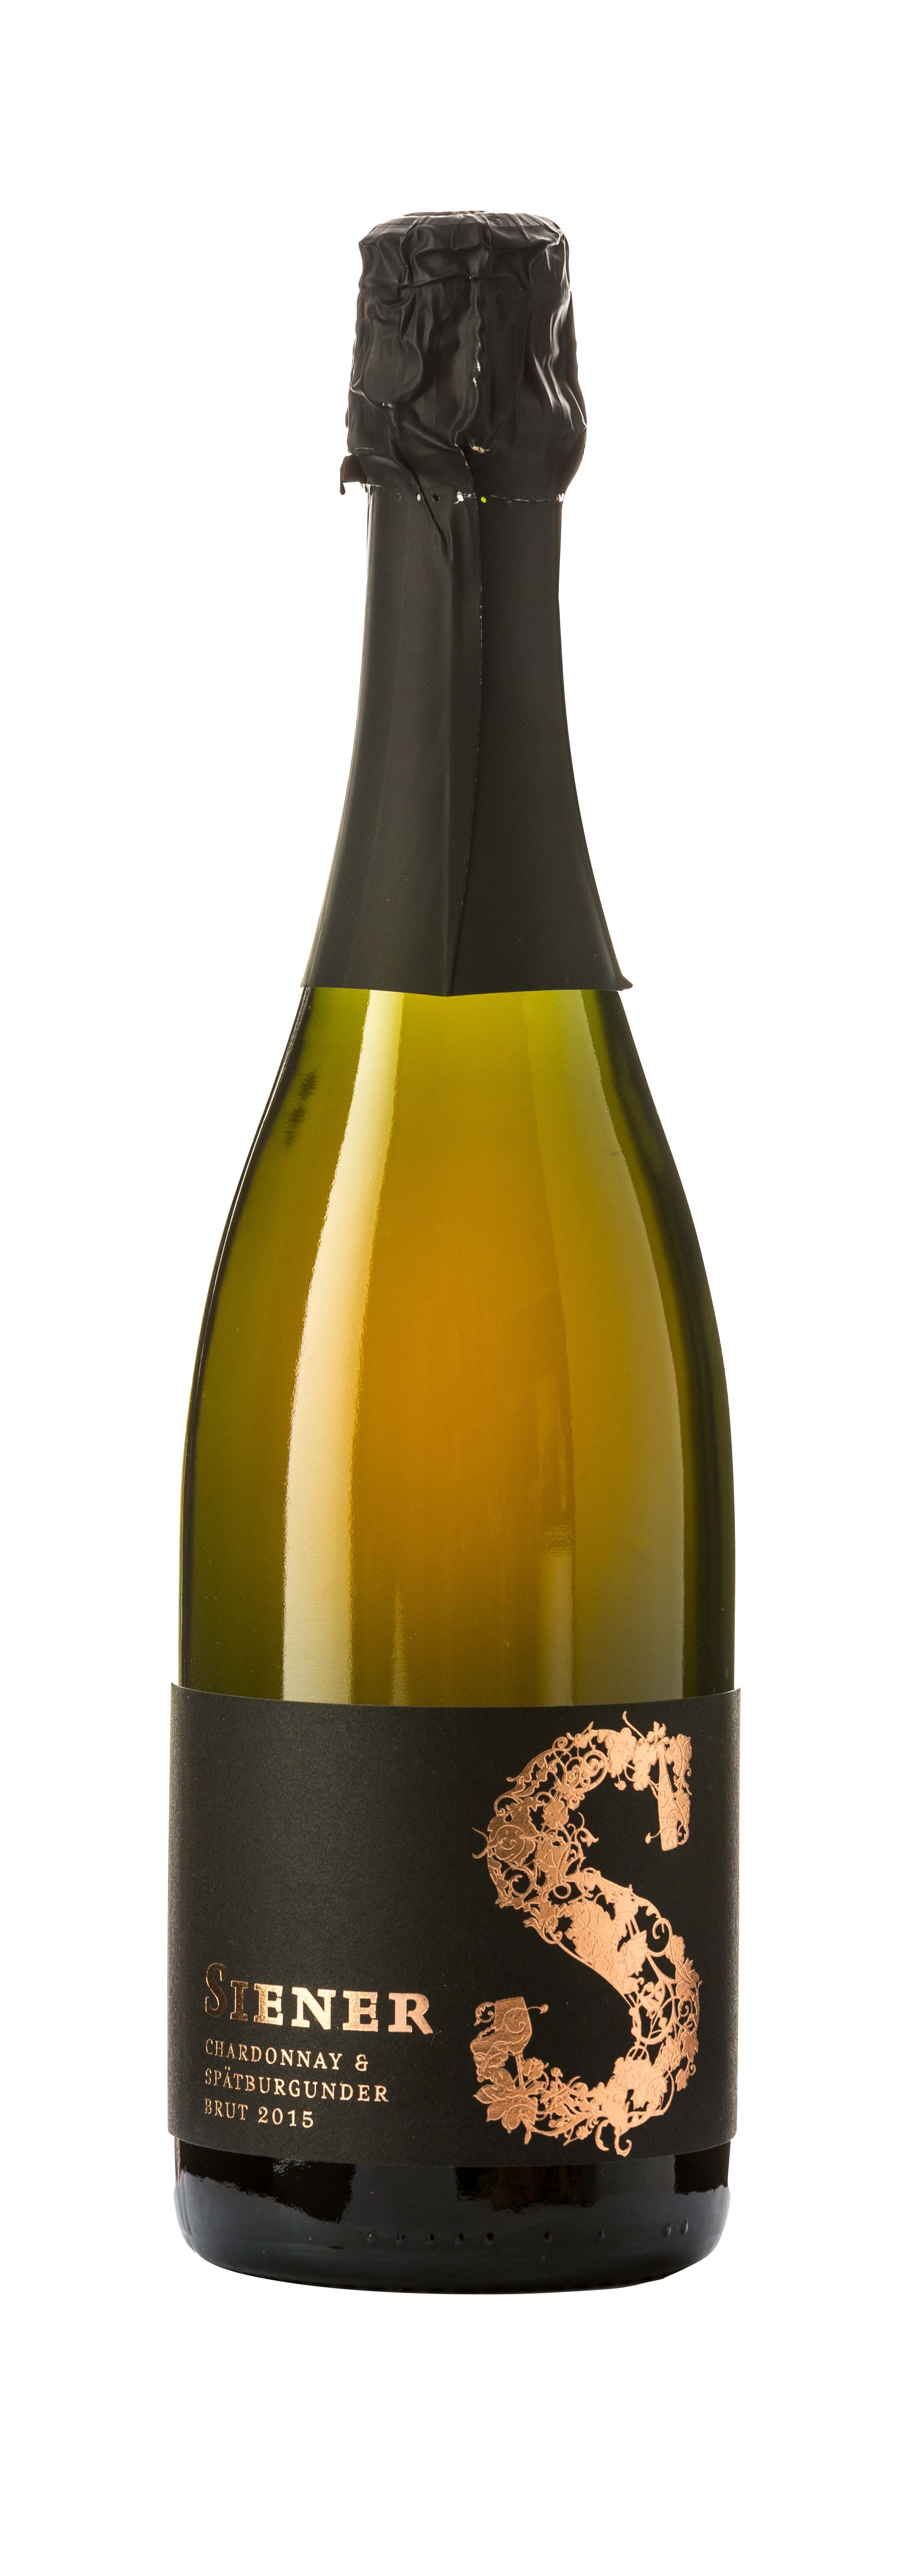 Chardonnay - Spätburgunder Brut 2015